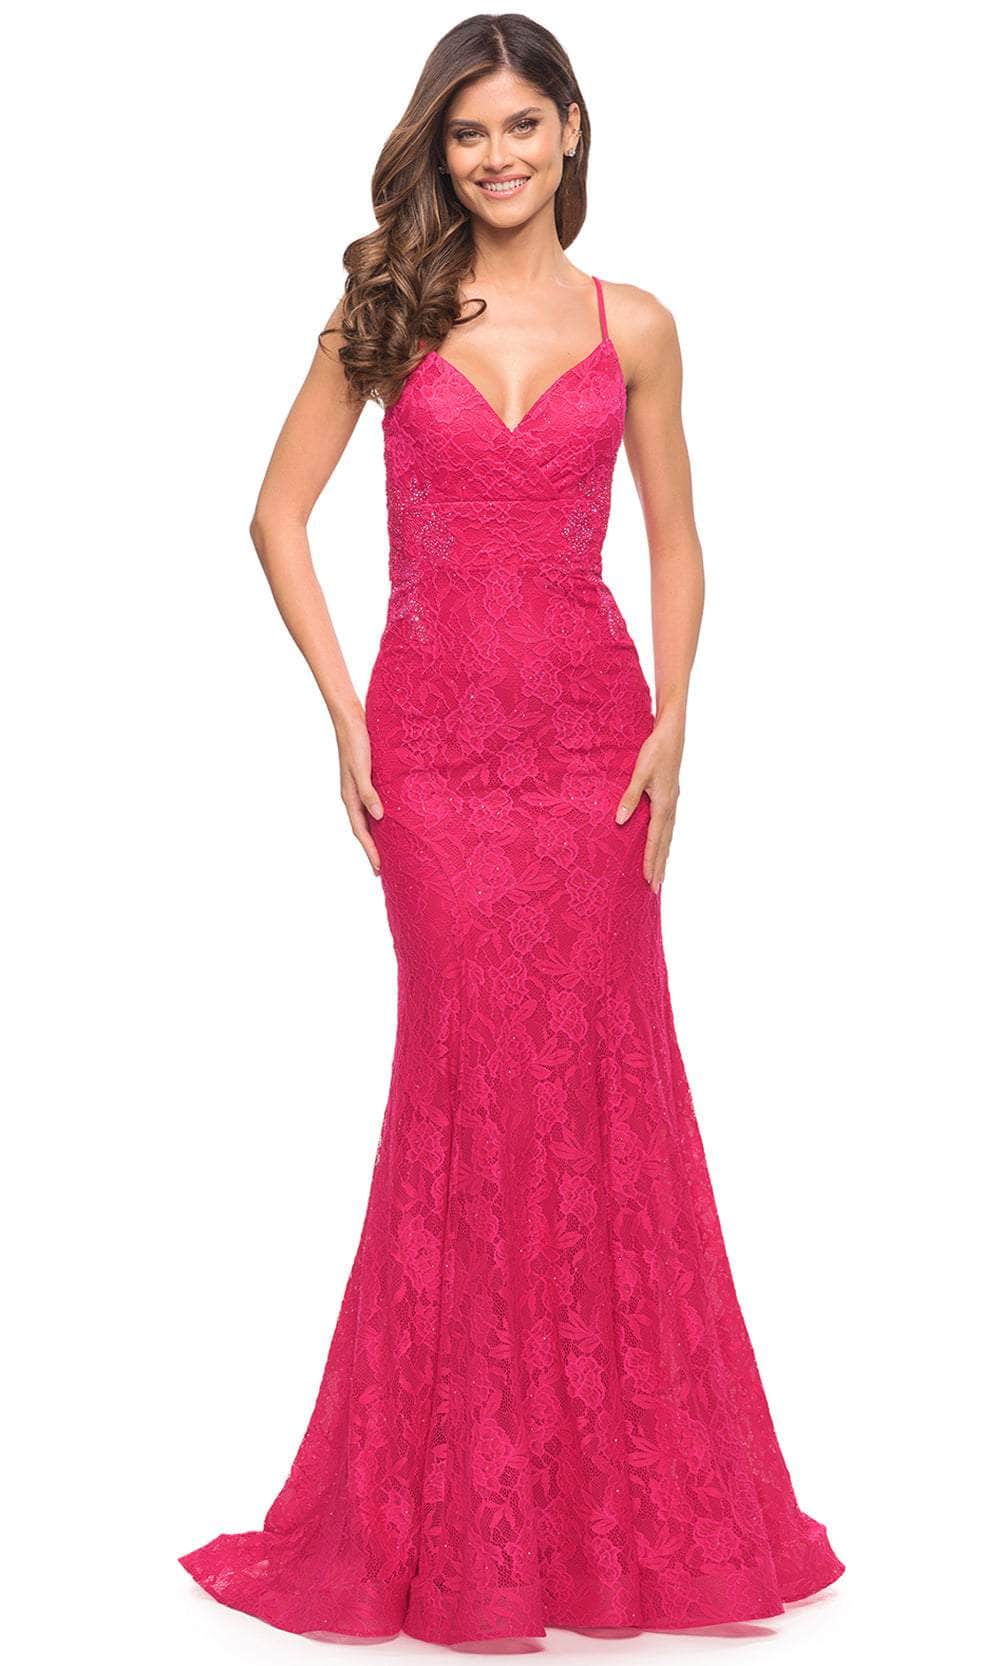 Image of La Femme 30690 - Sleeveless Lace Up Mermaid Dress